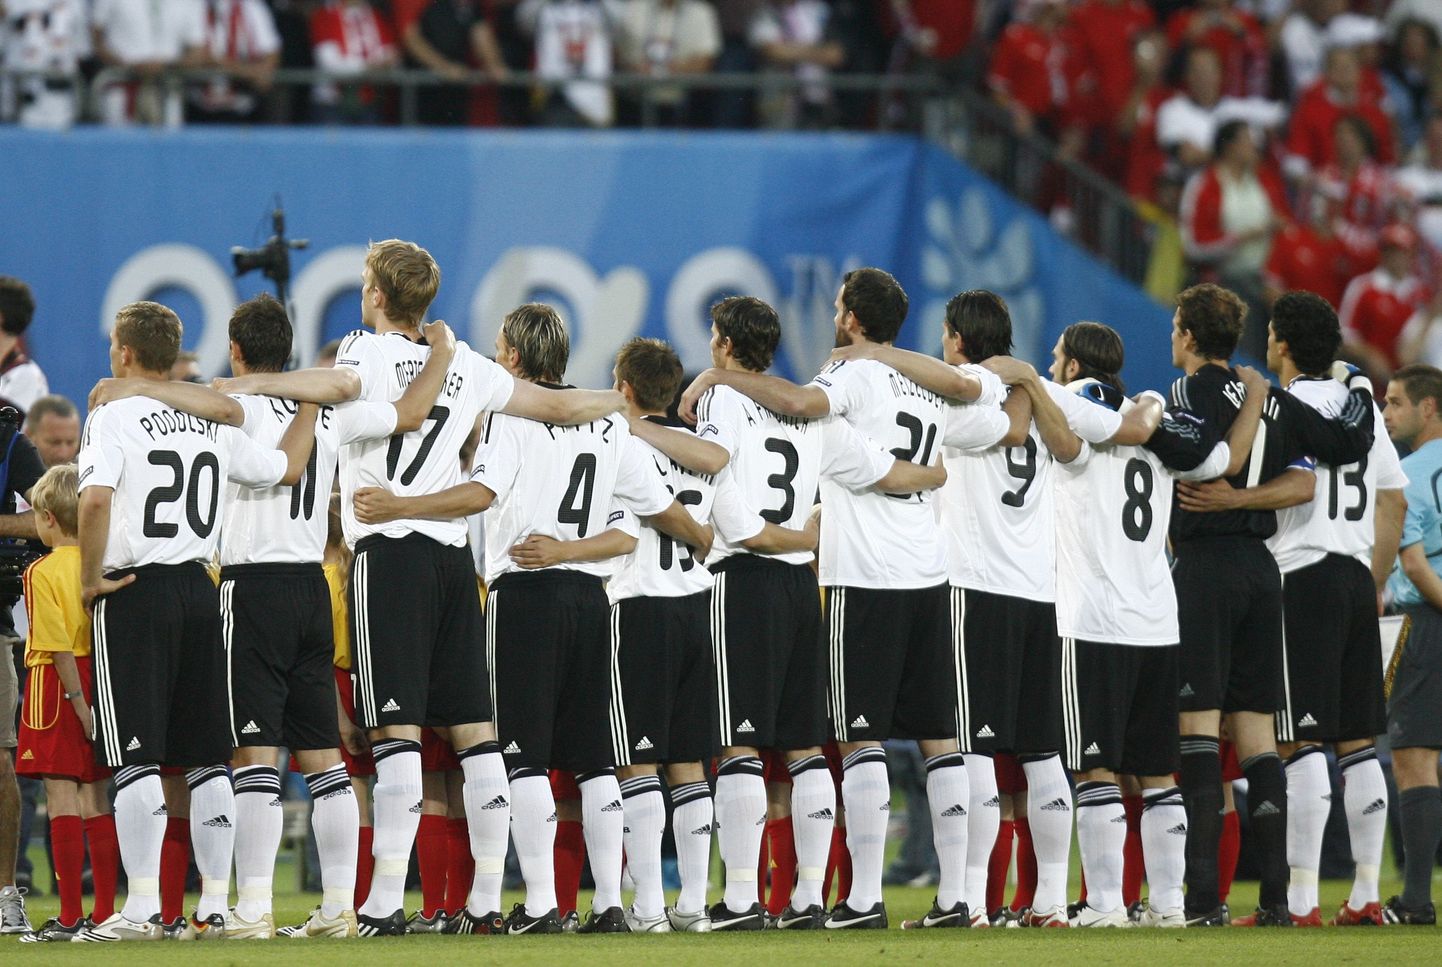 Saksa meeskond enne Austriaga kohtumist oma riigihümni kaasa laulmas